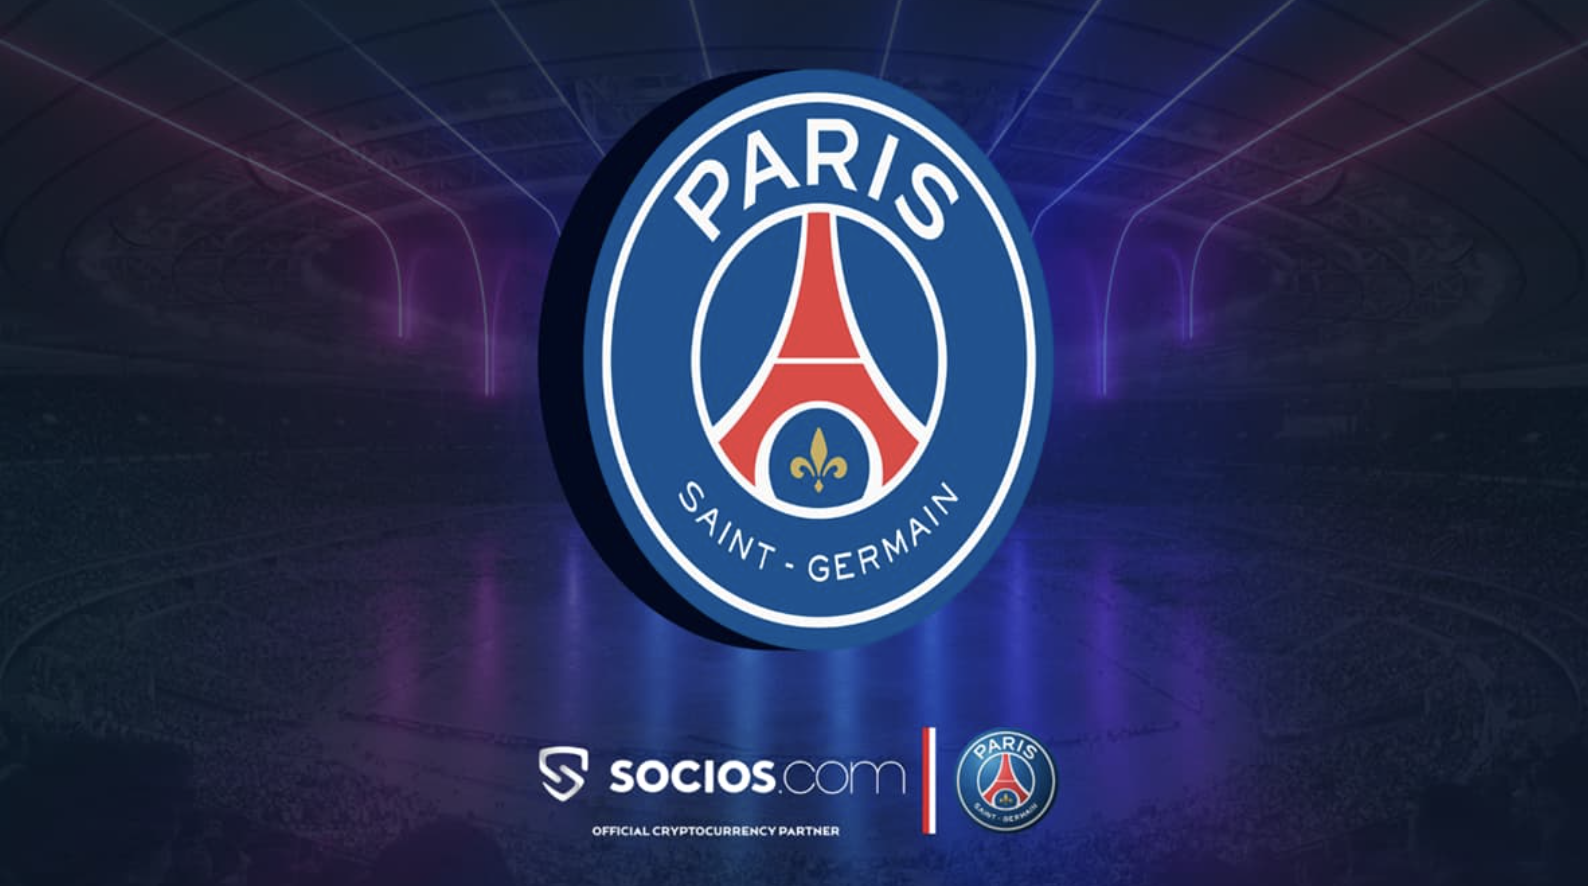 How to Get Paris Saint-Germain Fan Token?